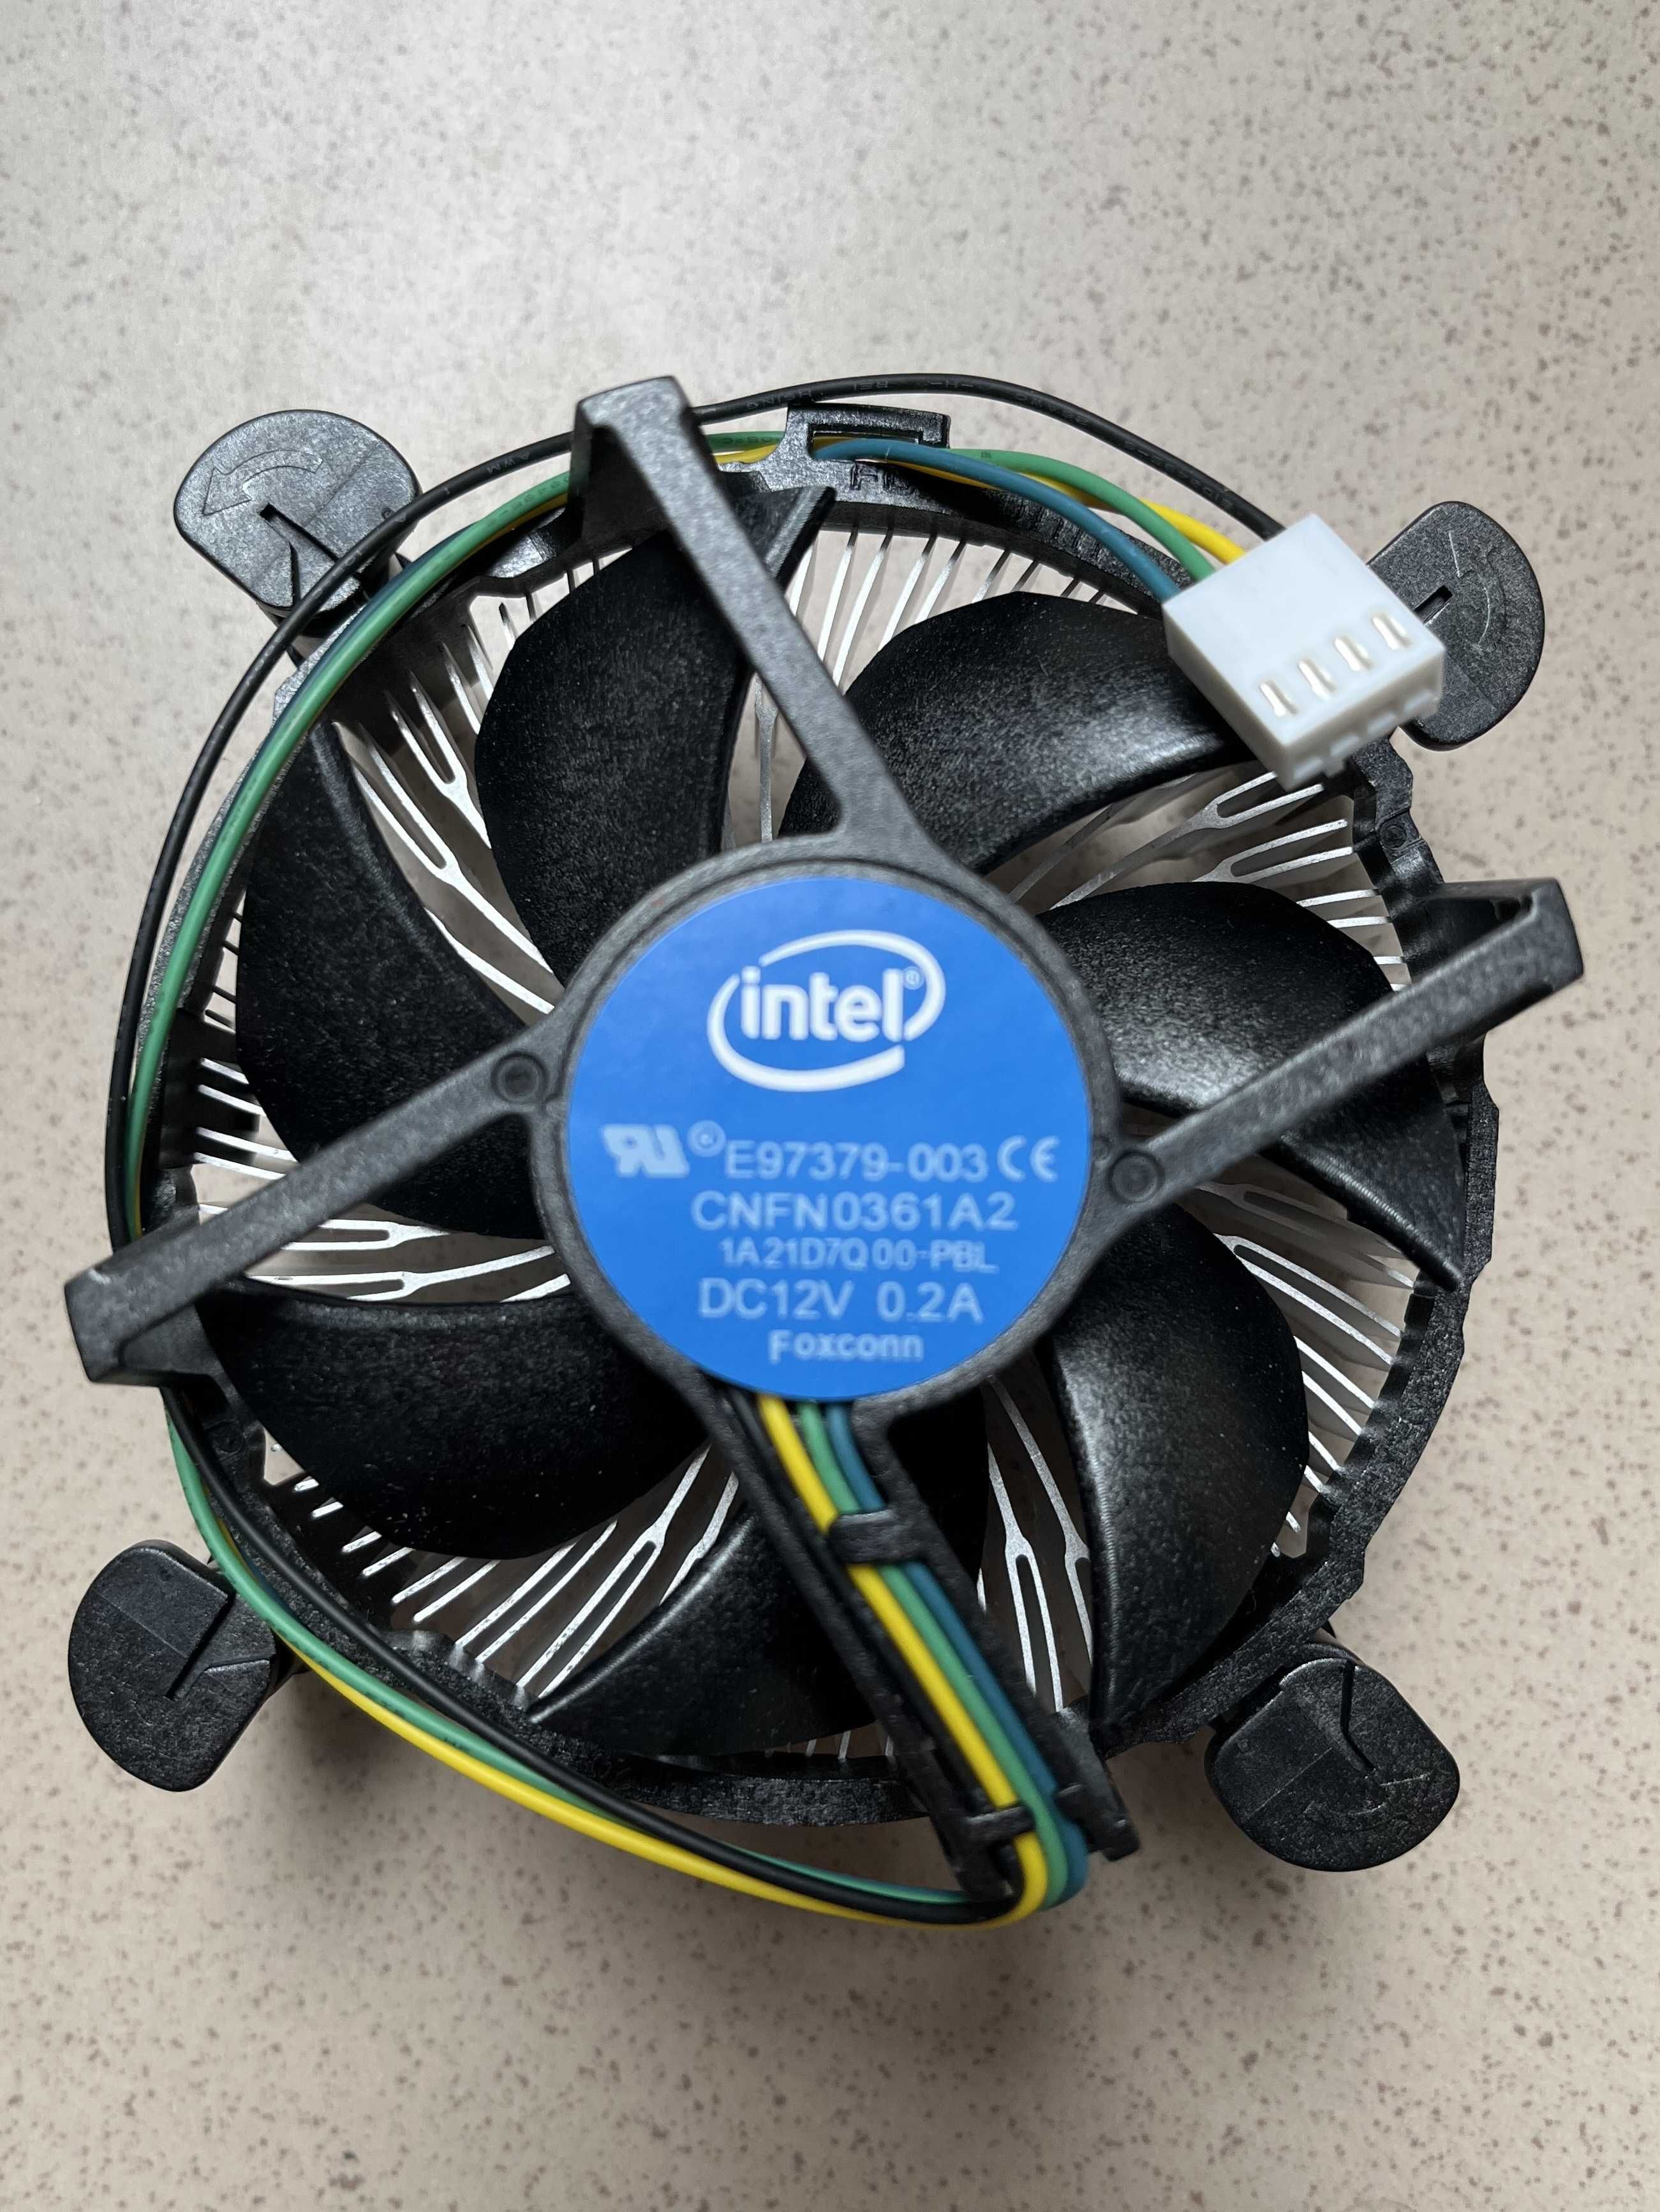 Procesor Intel Core i3-4130 3,4 GHz z radiatorem